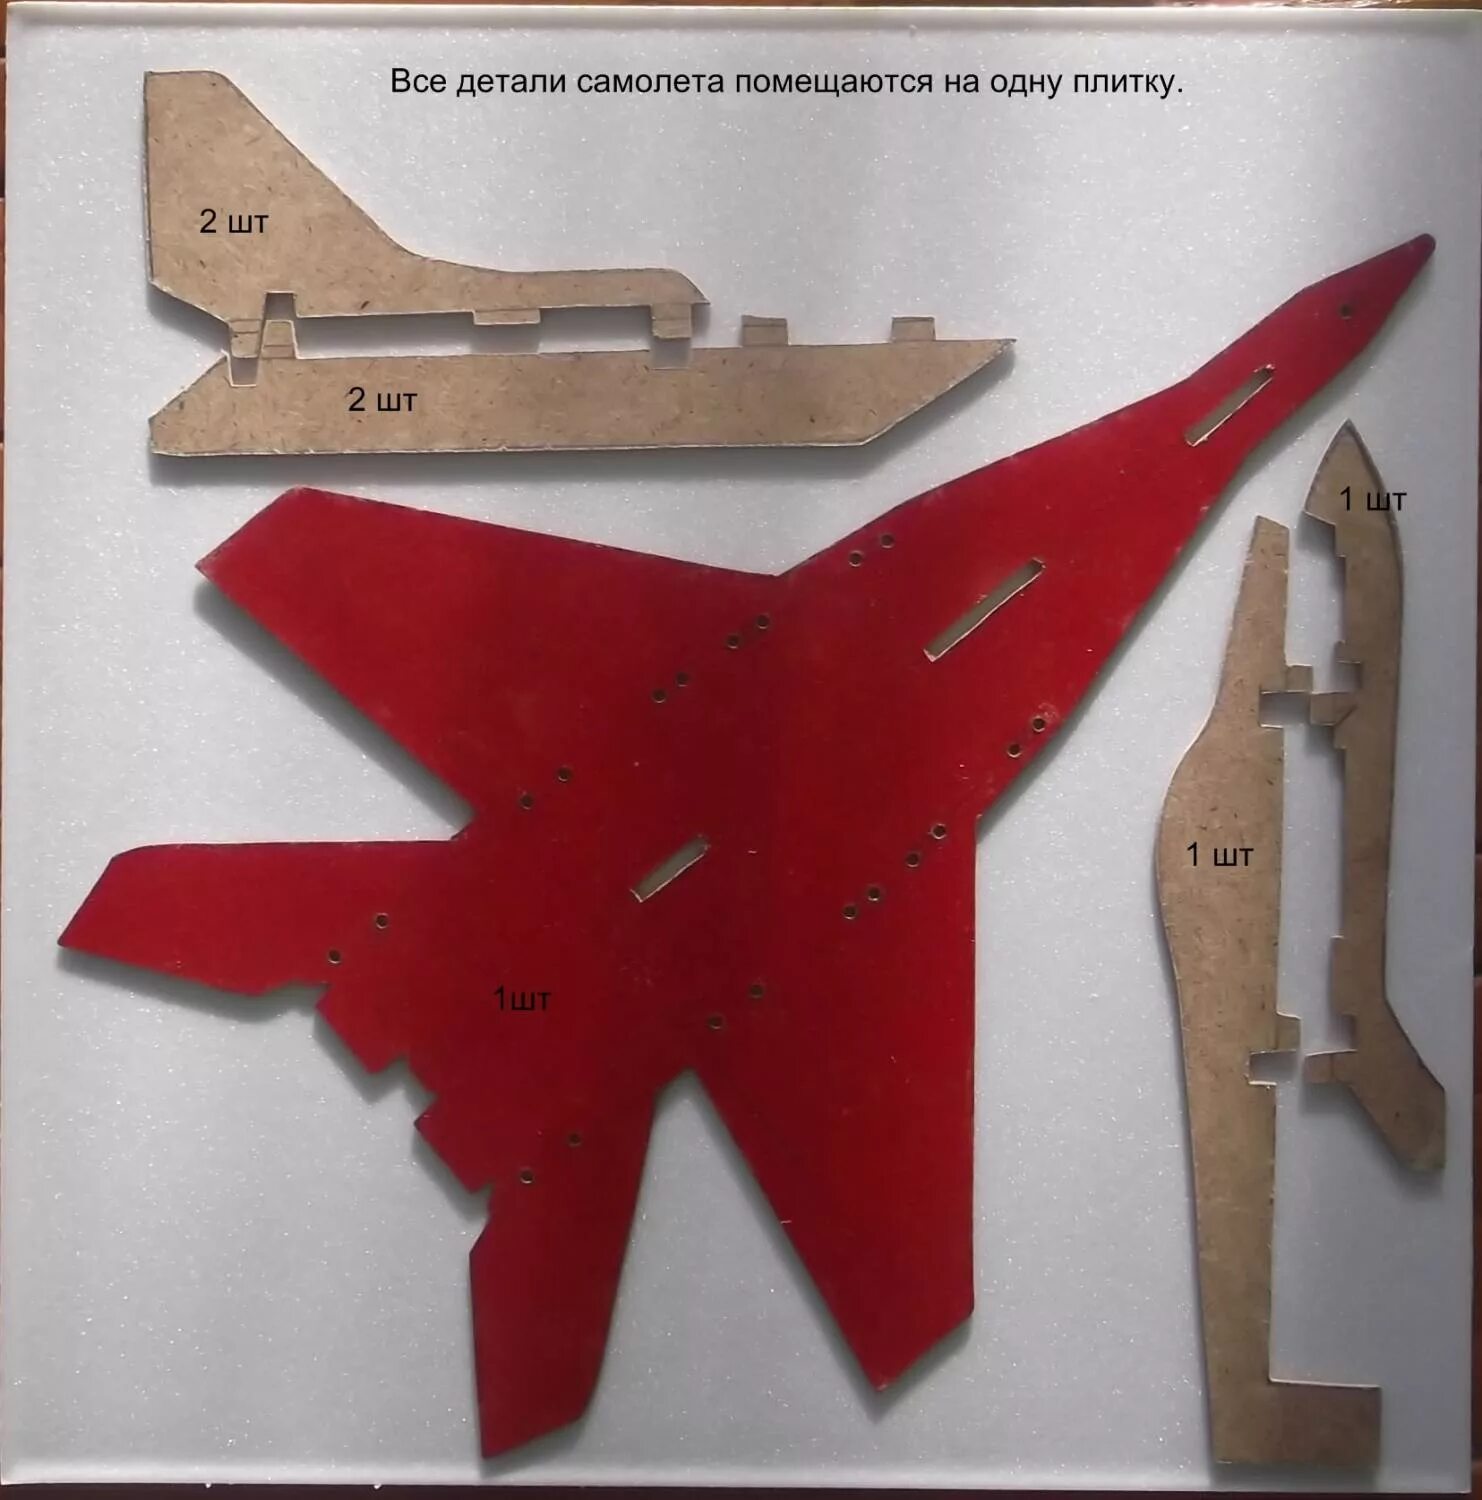 Самолет технология 4 класс. Макет самолета. Самолет из потолочной плитки. Детали самолета из картона. Макет самолёта из картона.